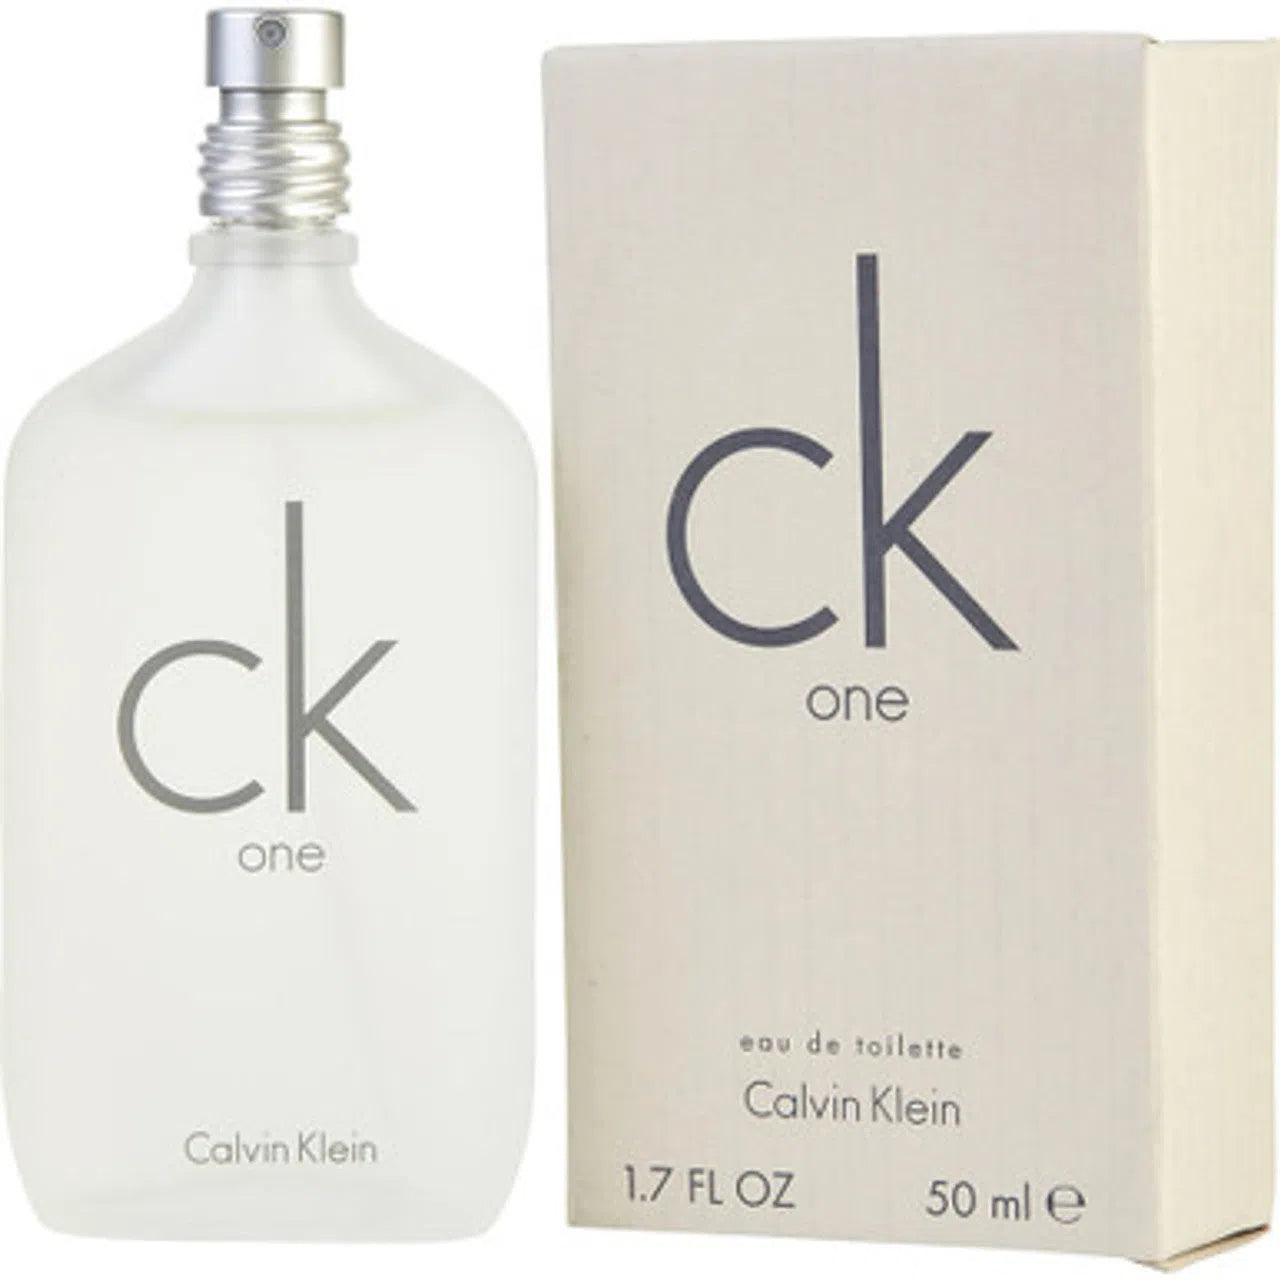 Perfume Calvin Klein CK One EDT (M) / 50 ml - 088300107681- Prive Perfumes Honduras